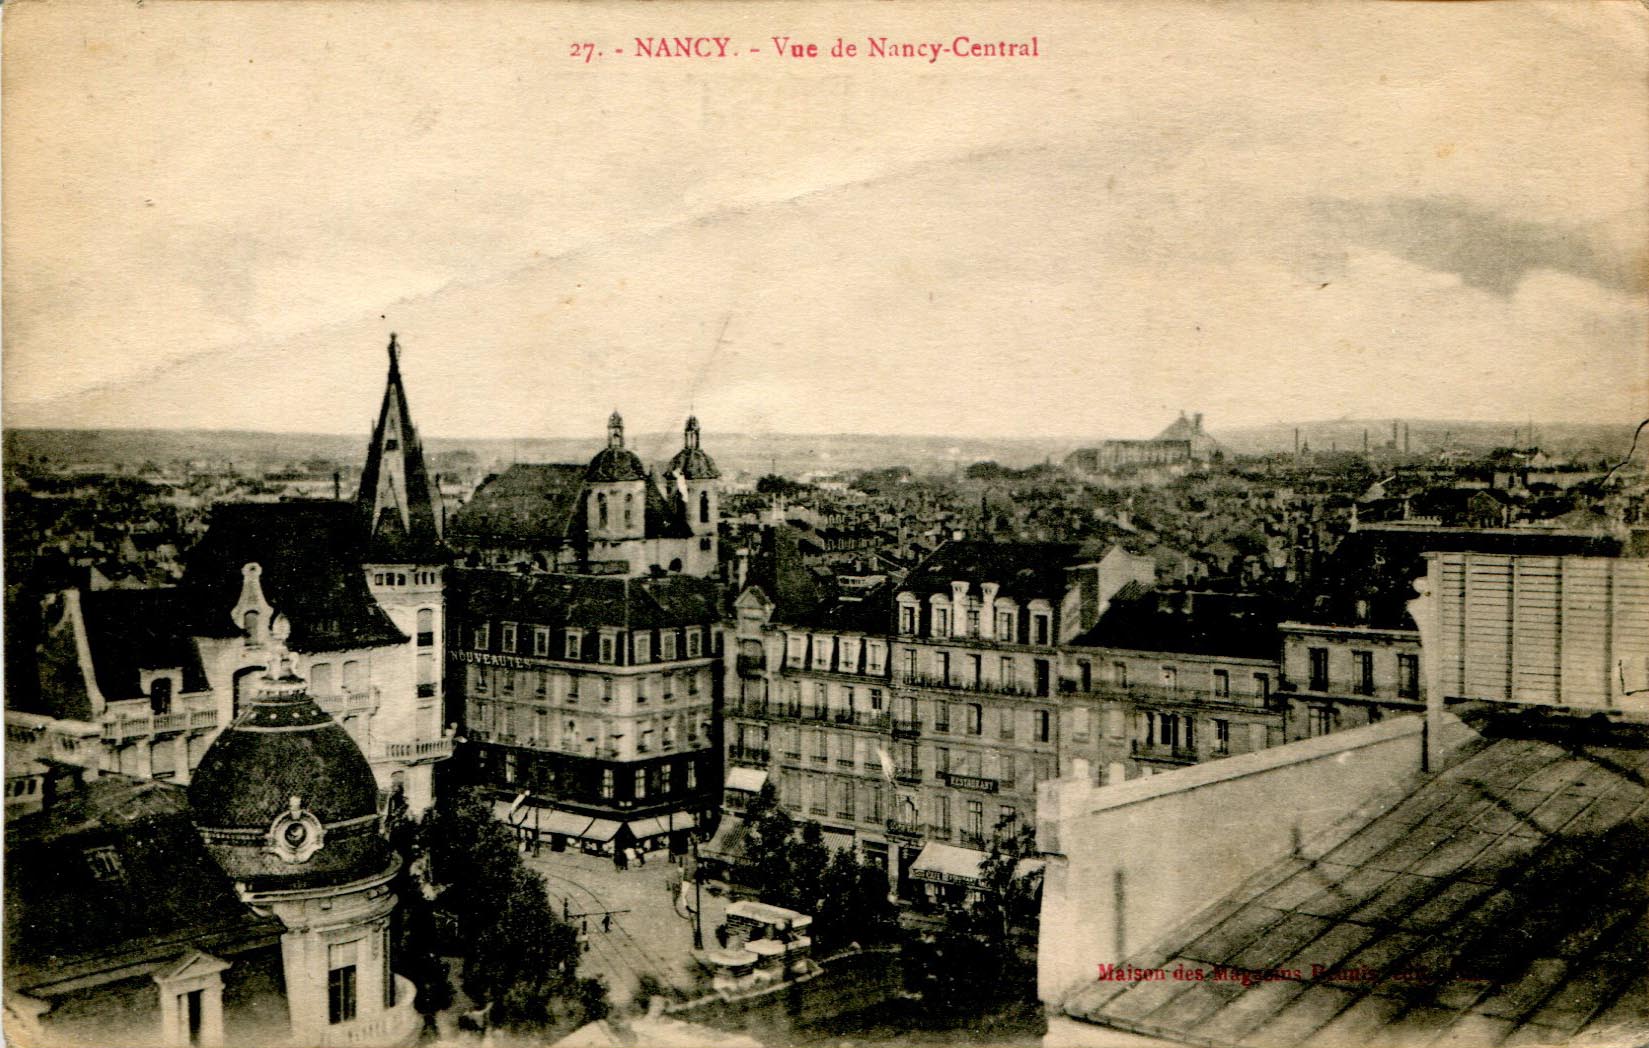 Nancy-Central